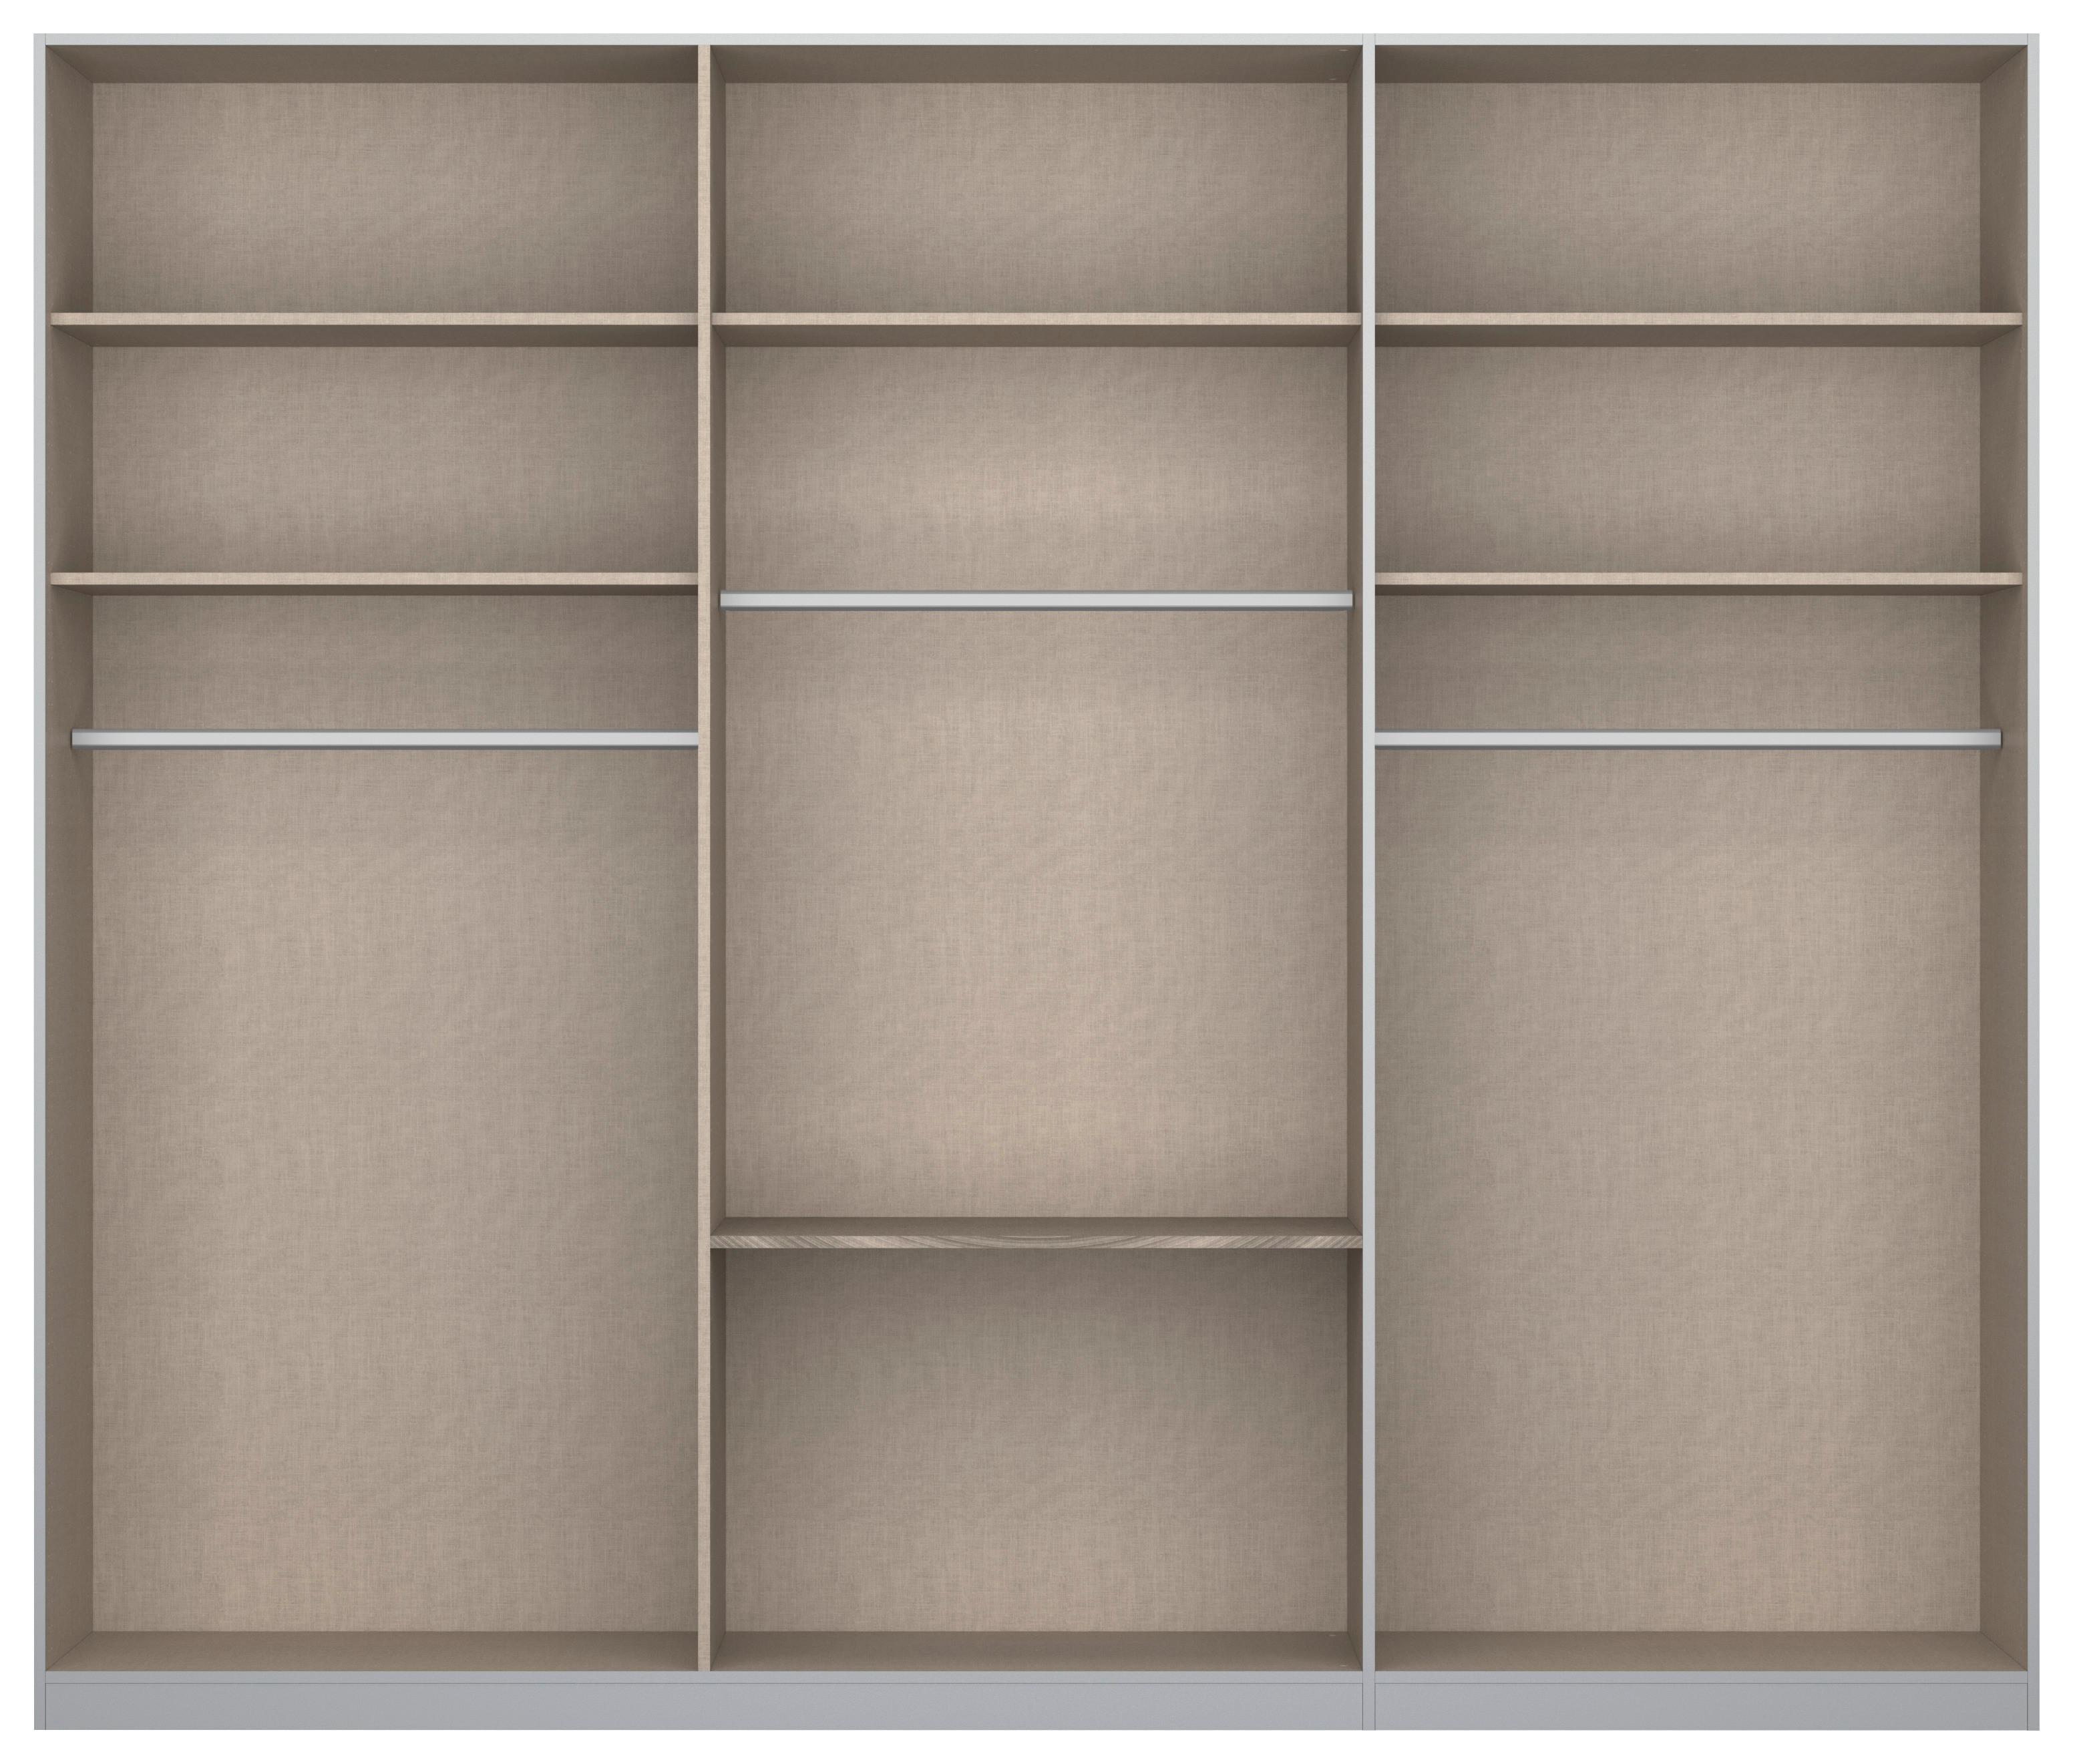 Skříň S Otočnými Dveřmi Alabama - světle šedá/barvy hliníku, Moderní, kompozitní dřevo (271/229/54cm)